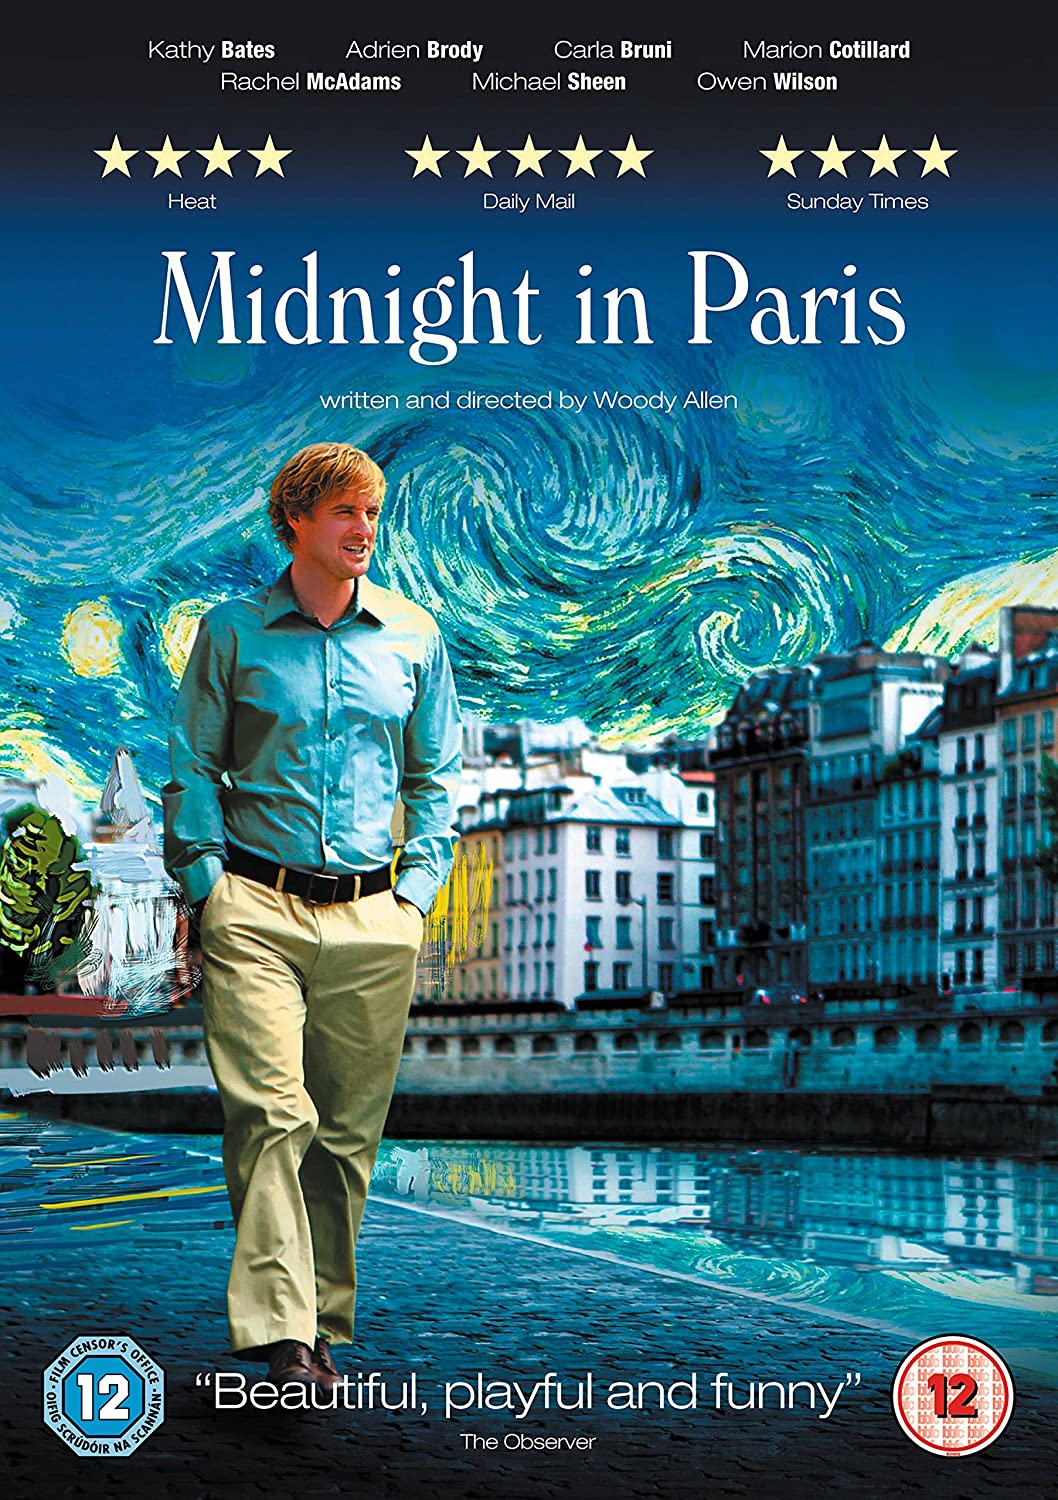 Stiahni si HD Filmy Pulnoc v Parizi / Midnight in Paris(2011)(CZ)(1080p)  = CSFD 76%